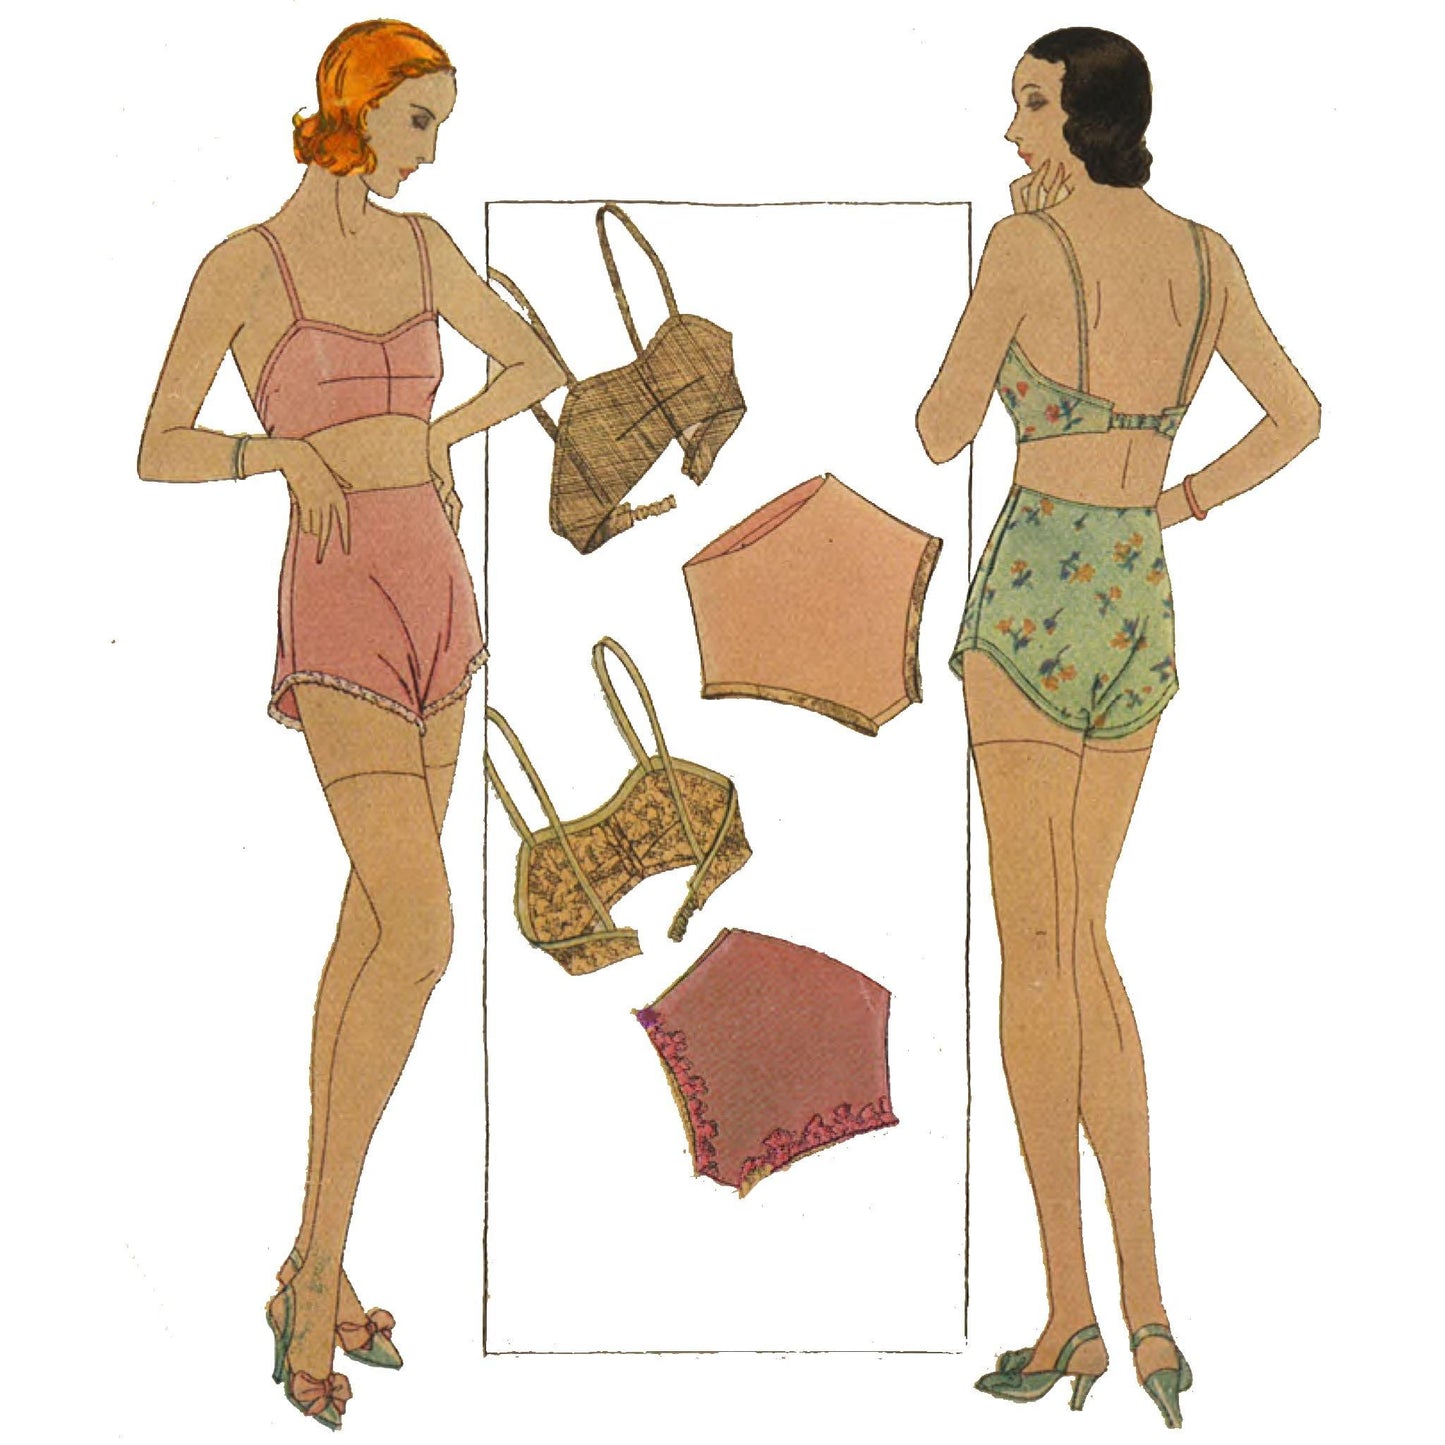 Women wearing underwear.